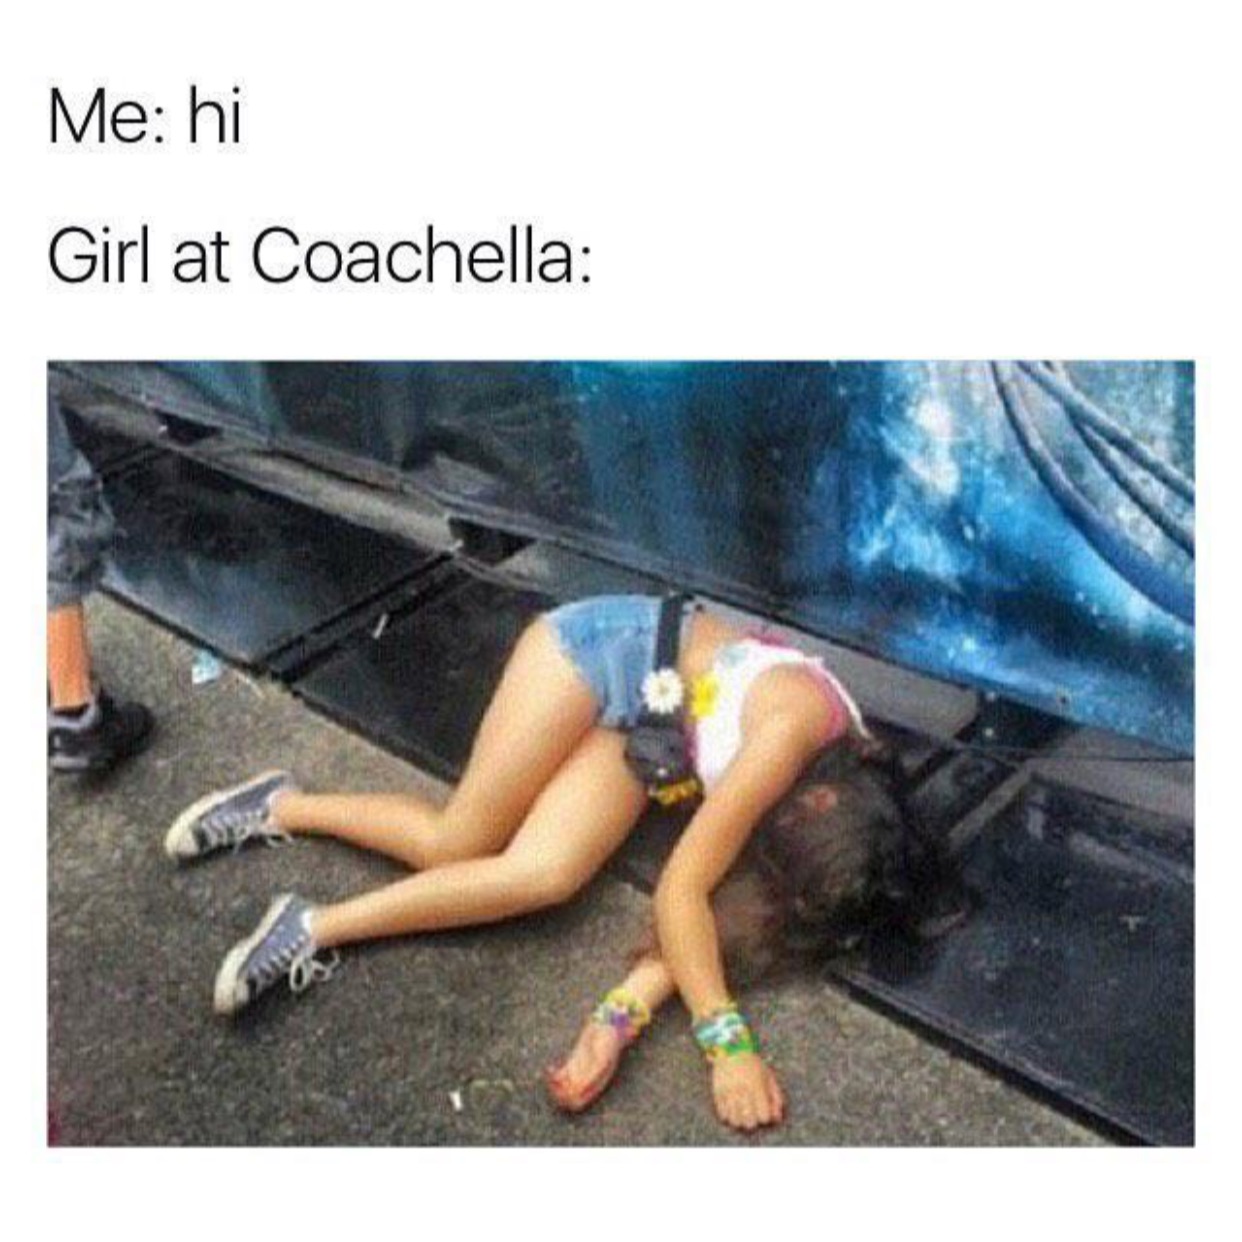 coachella girls meme - Me hi Girl at Coachella